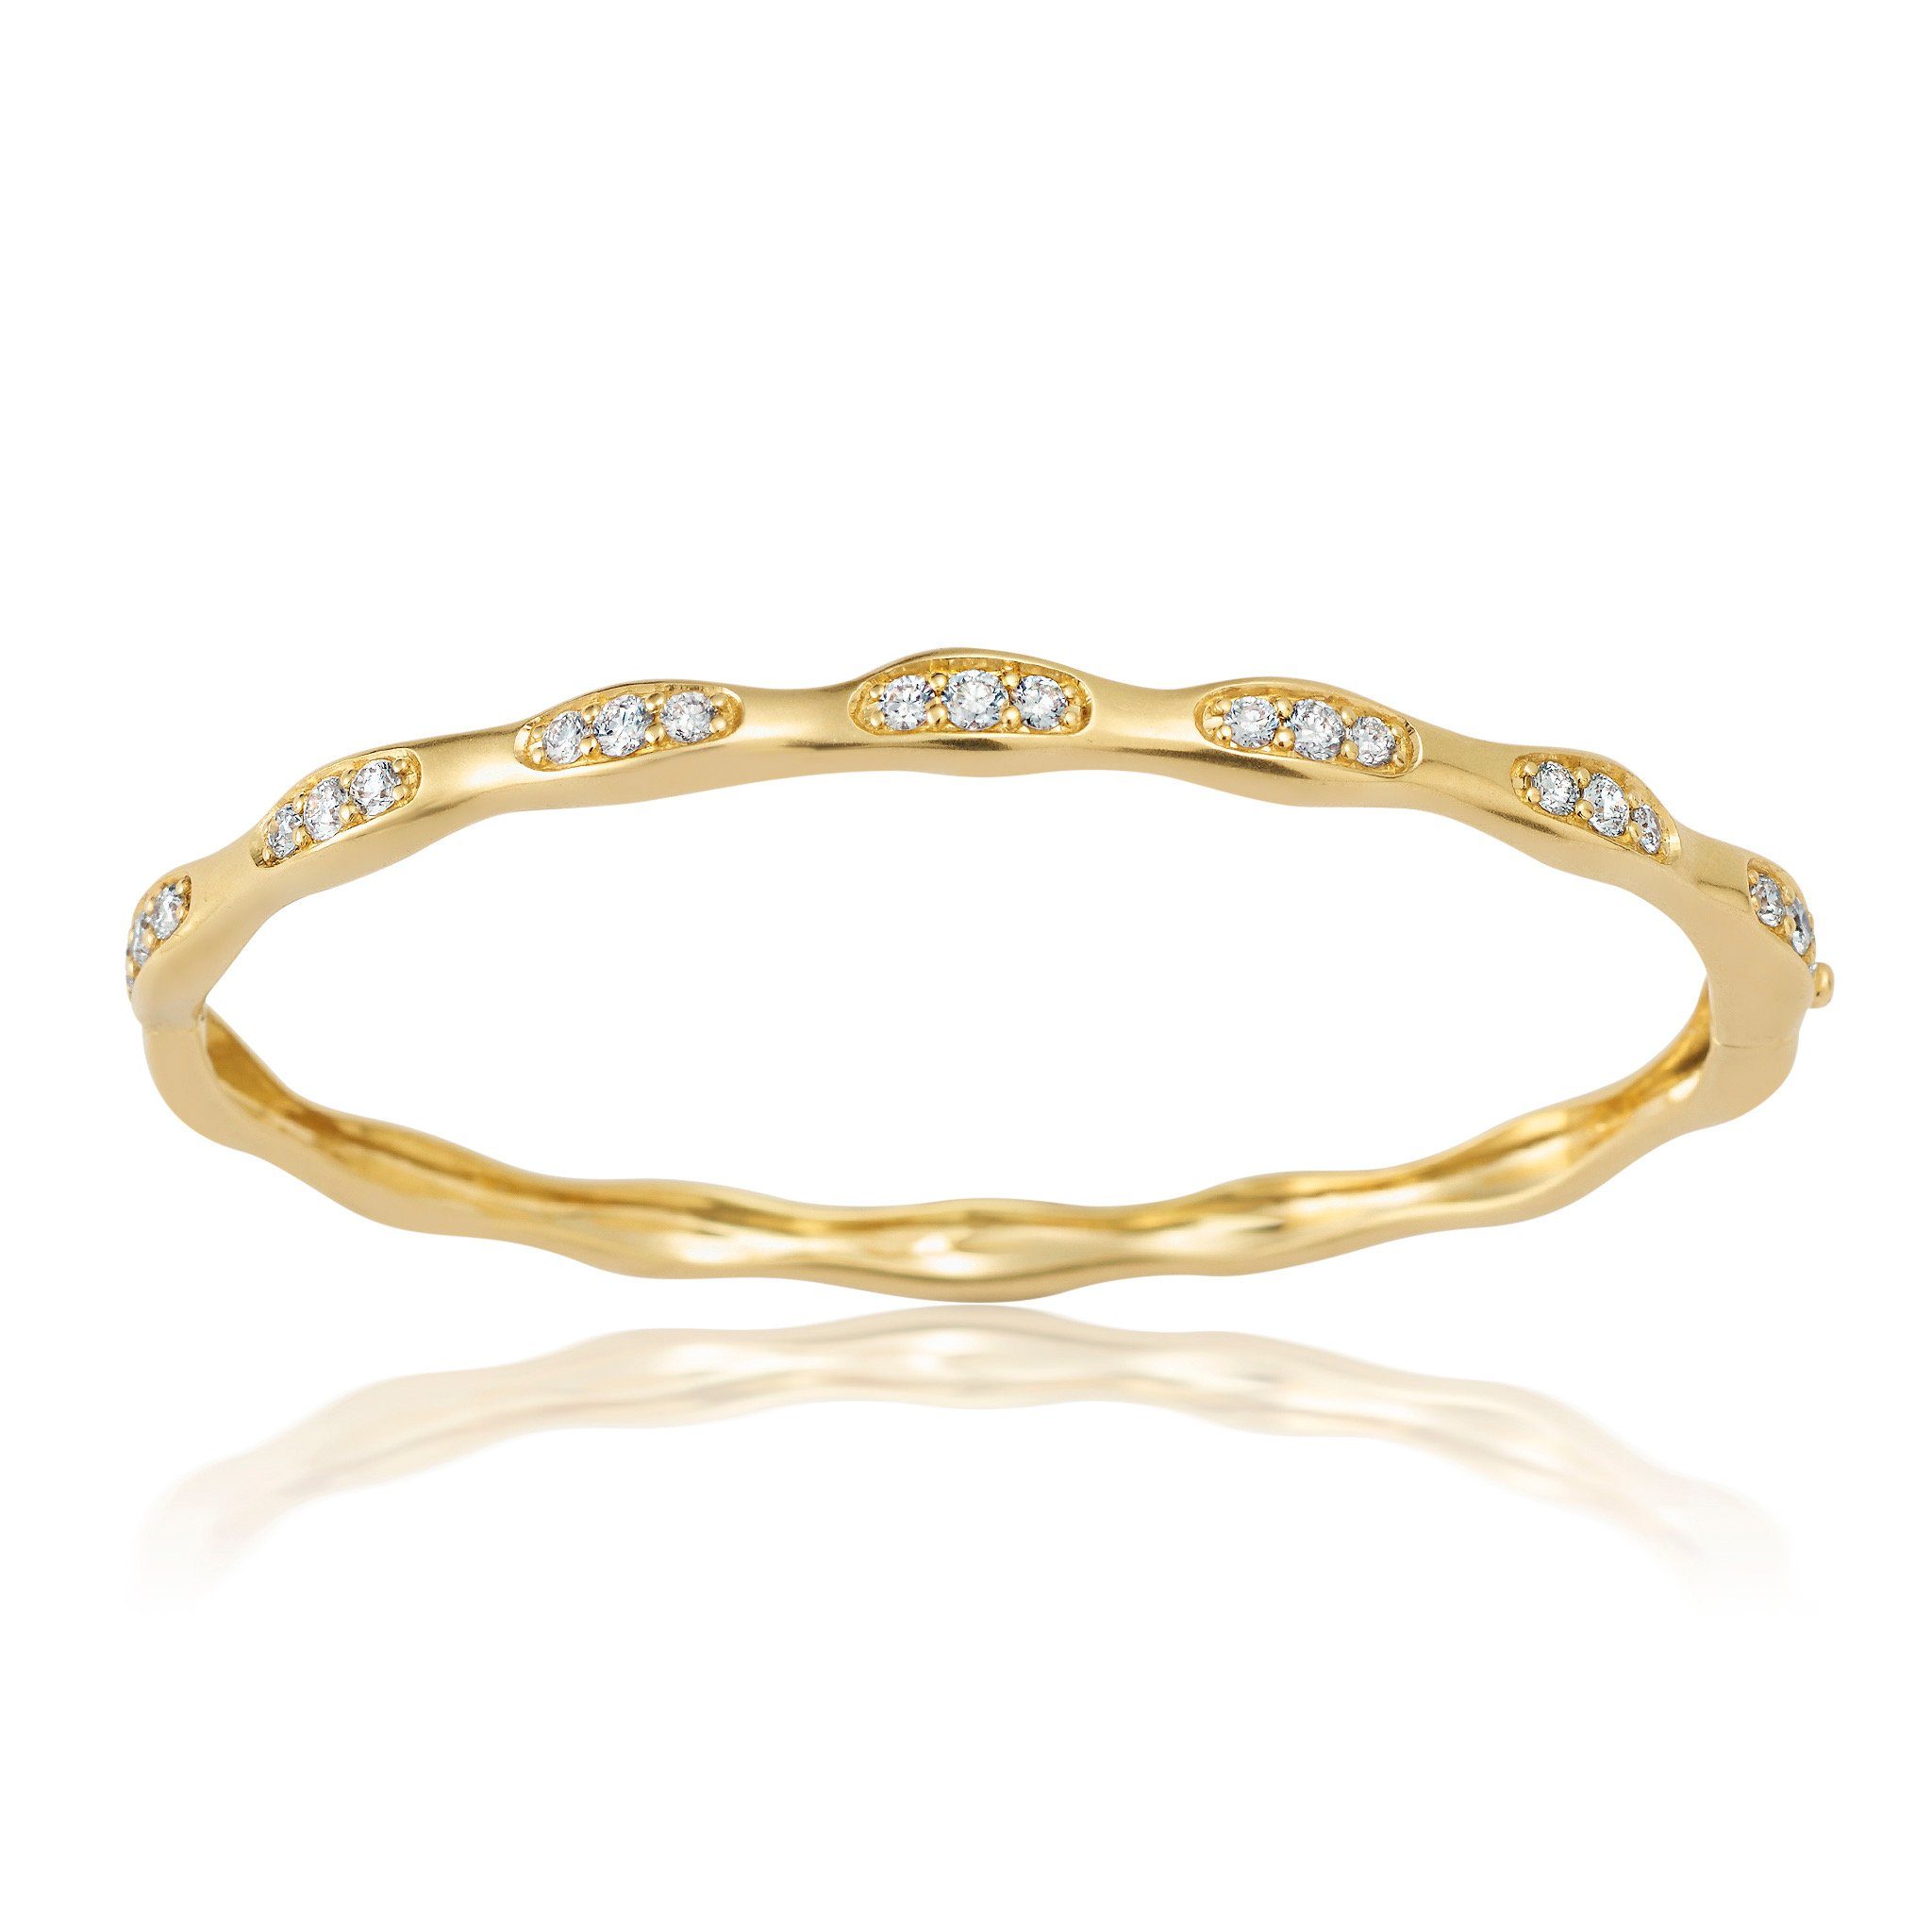 Three Diamond Gold Bracelet Jewelry Bayou with Love 